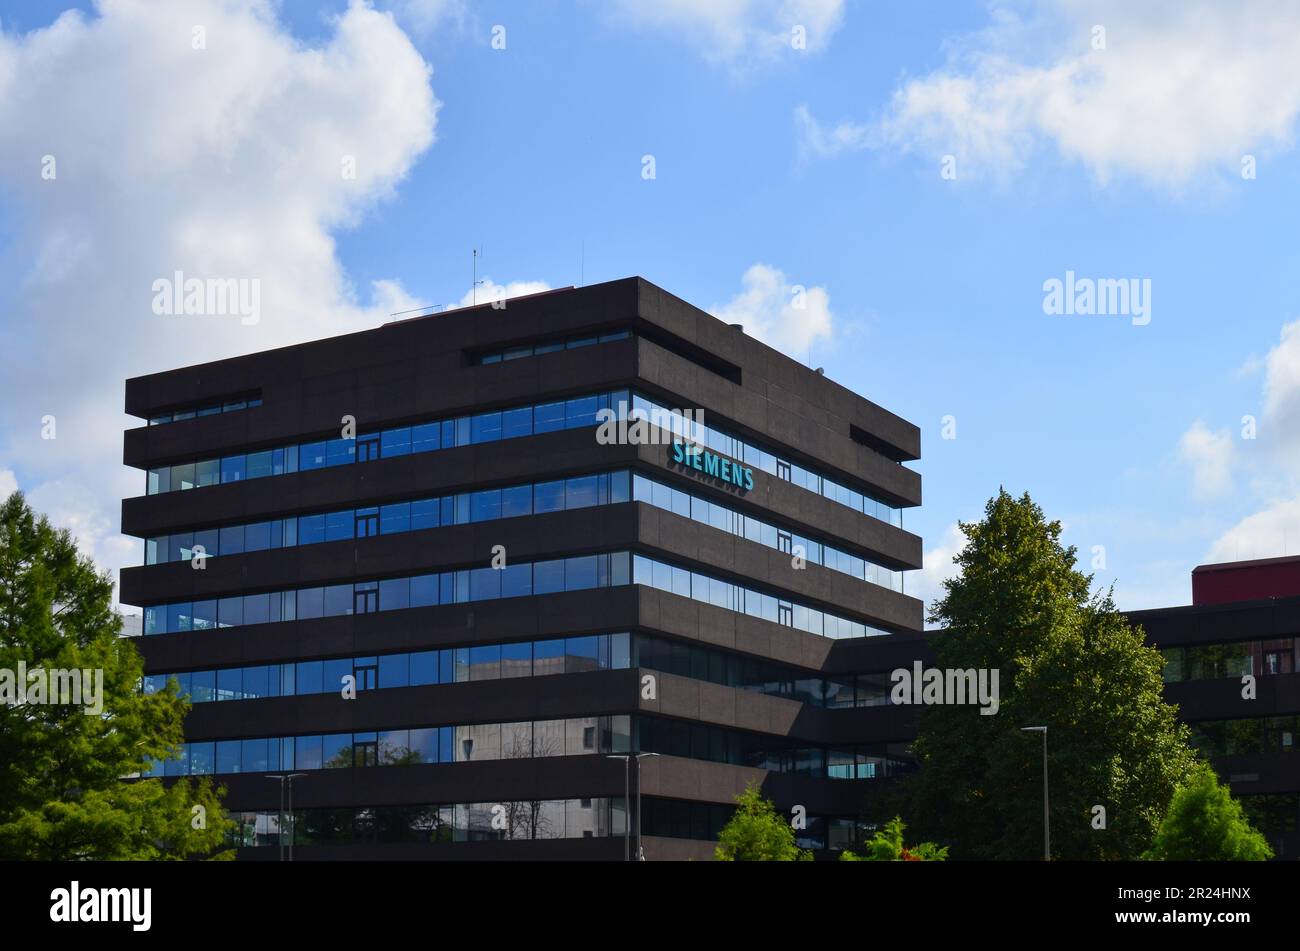 HAAG, NIEDERLANDE - 10. SEPTEMBER 2022: Gebäude des Siemens-Hauptquartiers an sonnigen Tagen Stockfoto